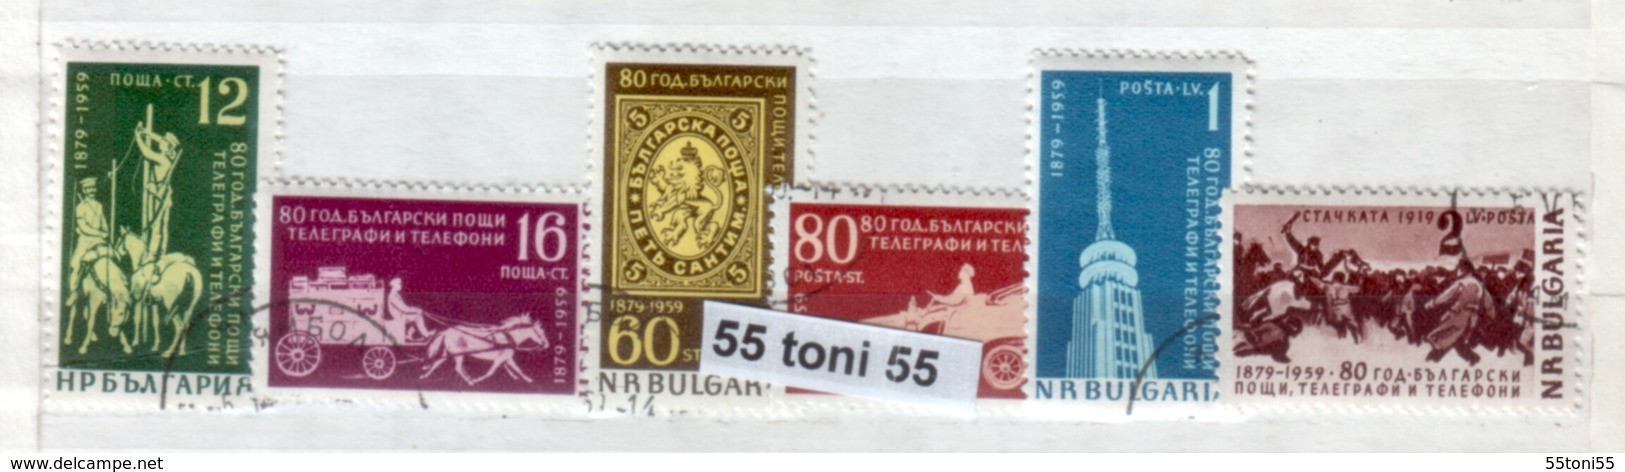 1959 80 Anniversaire De La Poste ( Chevaux - Cavalli) 6v. - Oblitere/used (O)Bulgarien / Bulgaria - Oblitérés